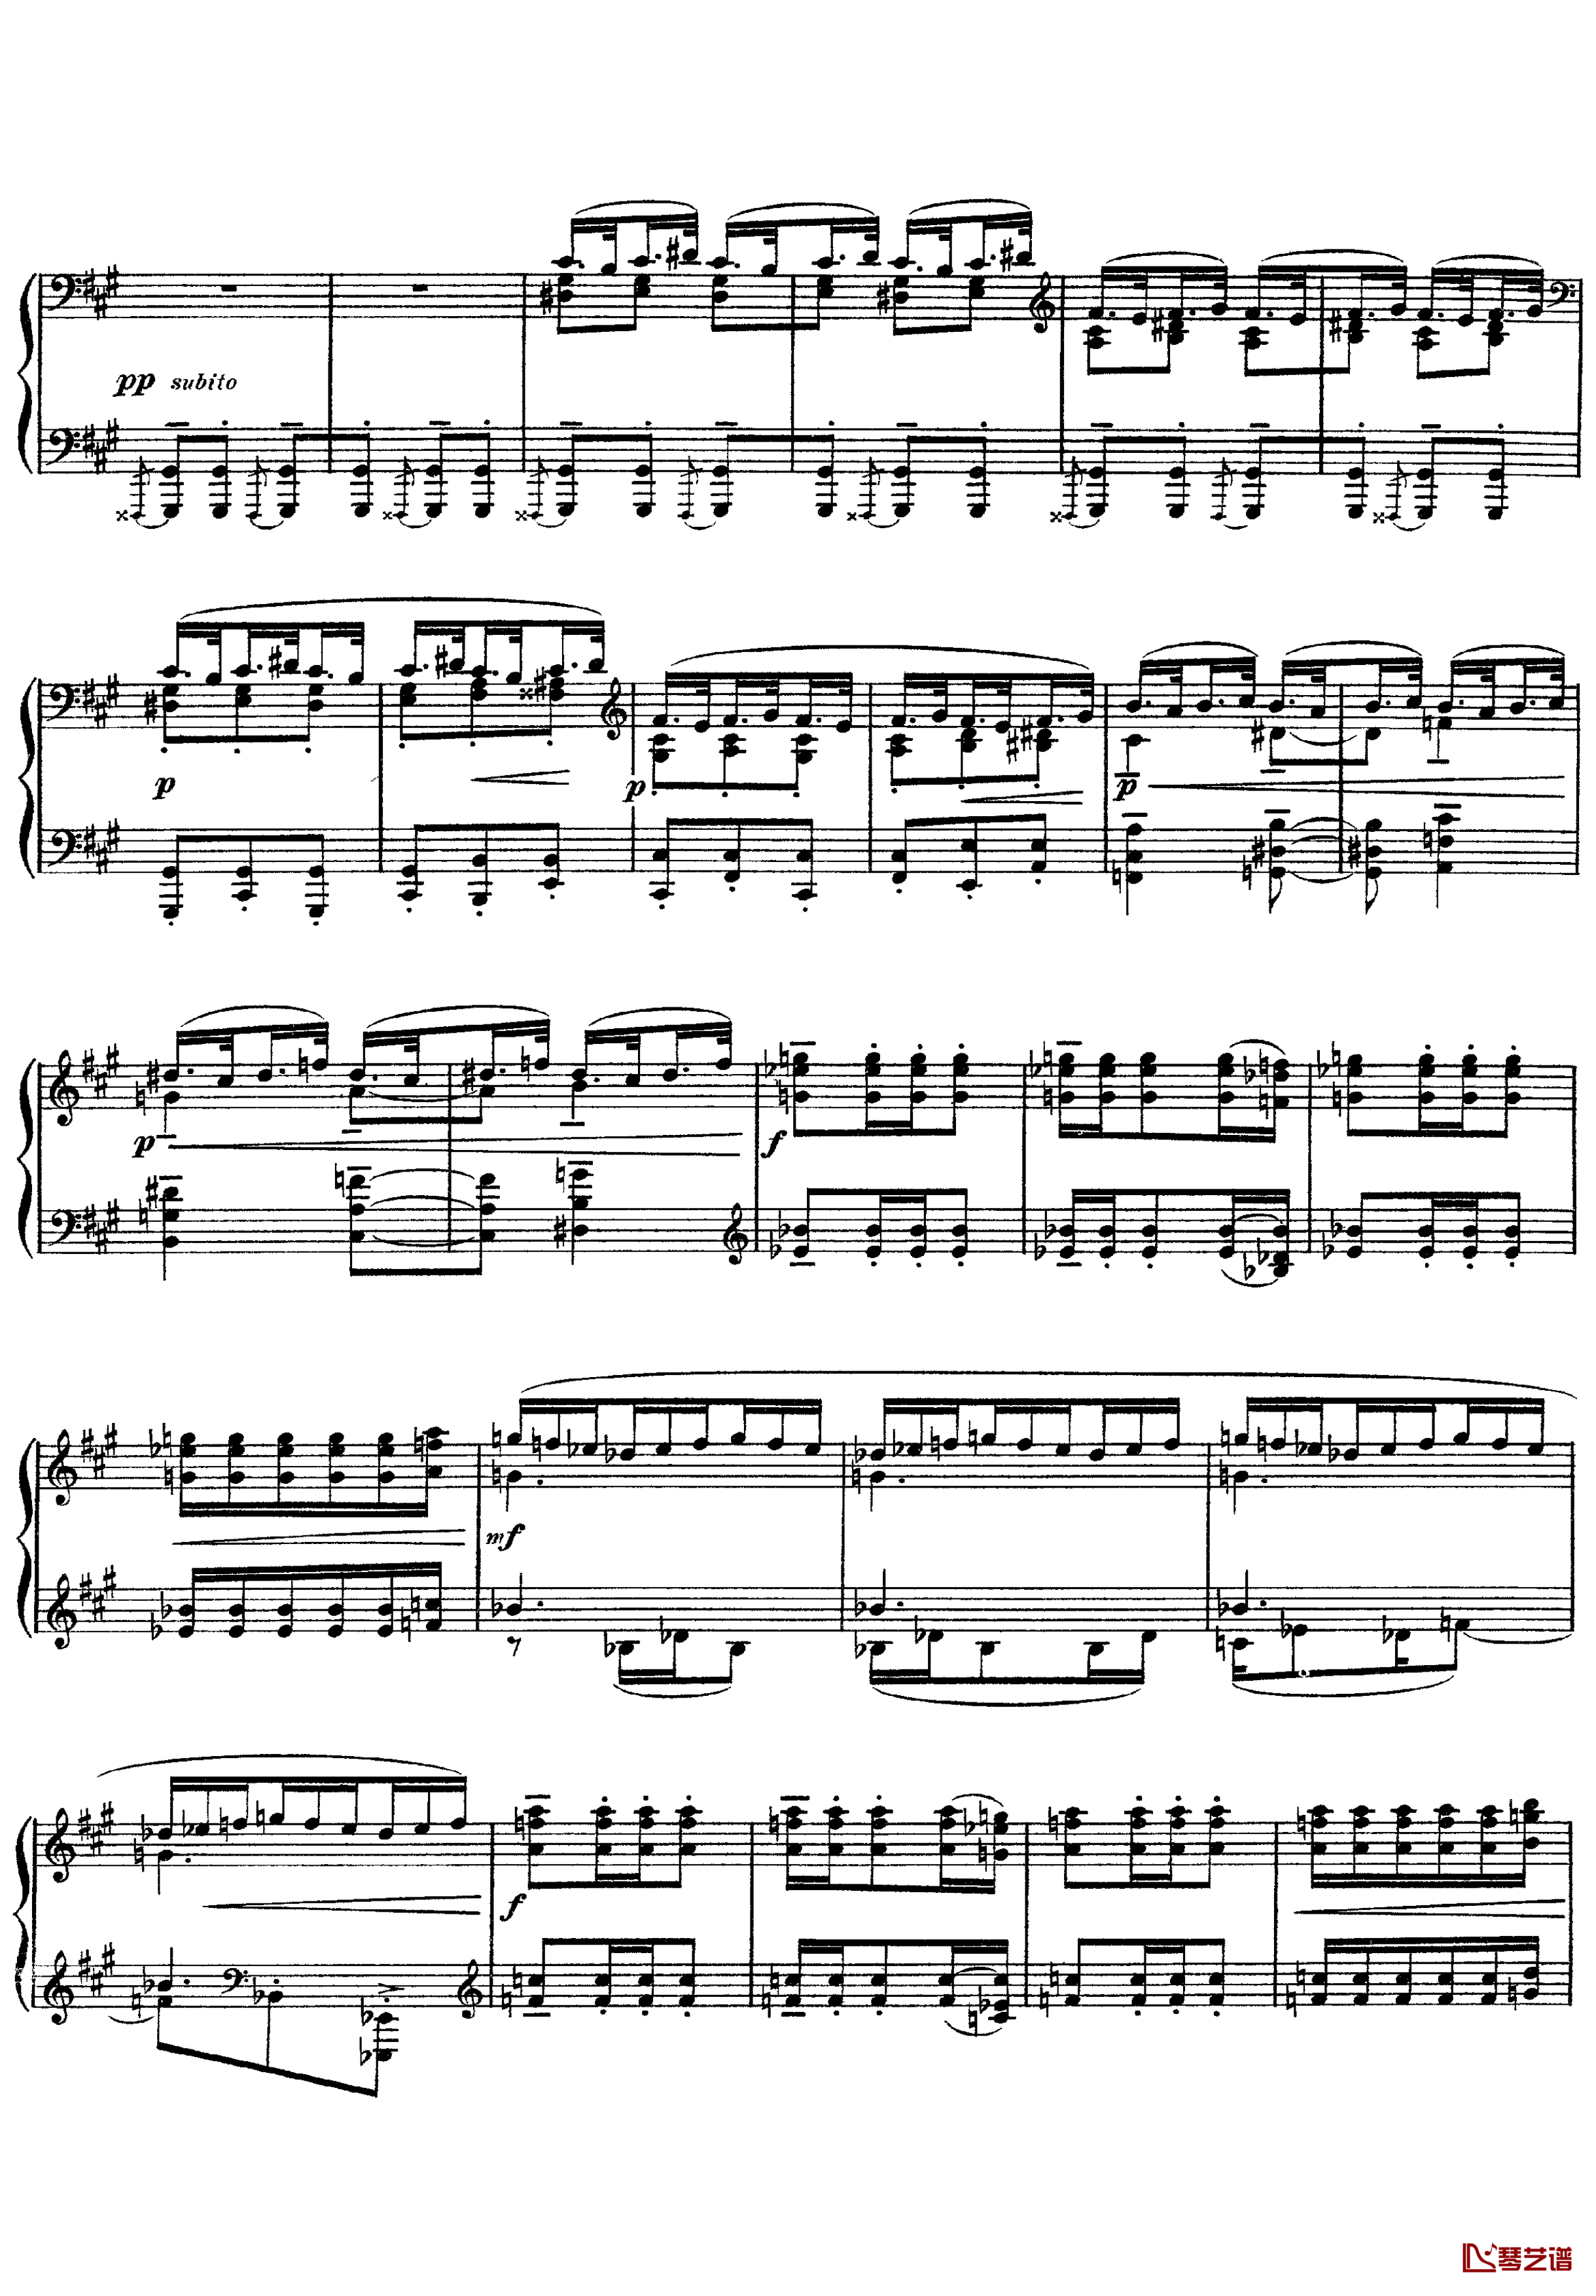 欢乐岛钢琴谱-德彪西11